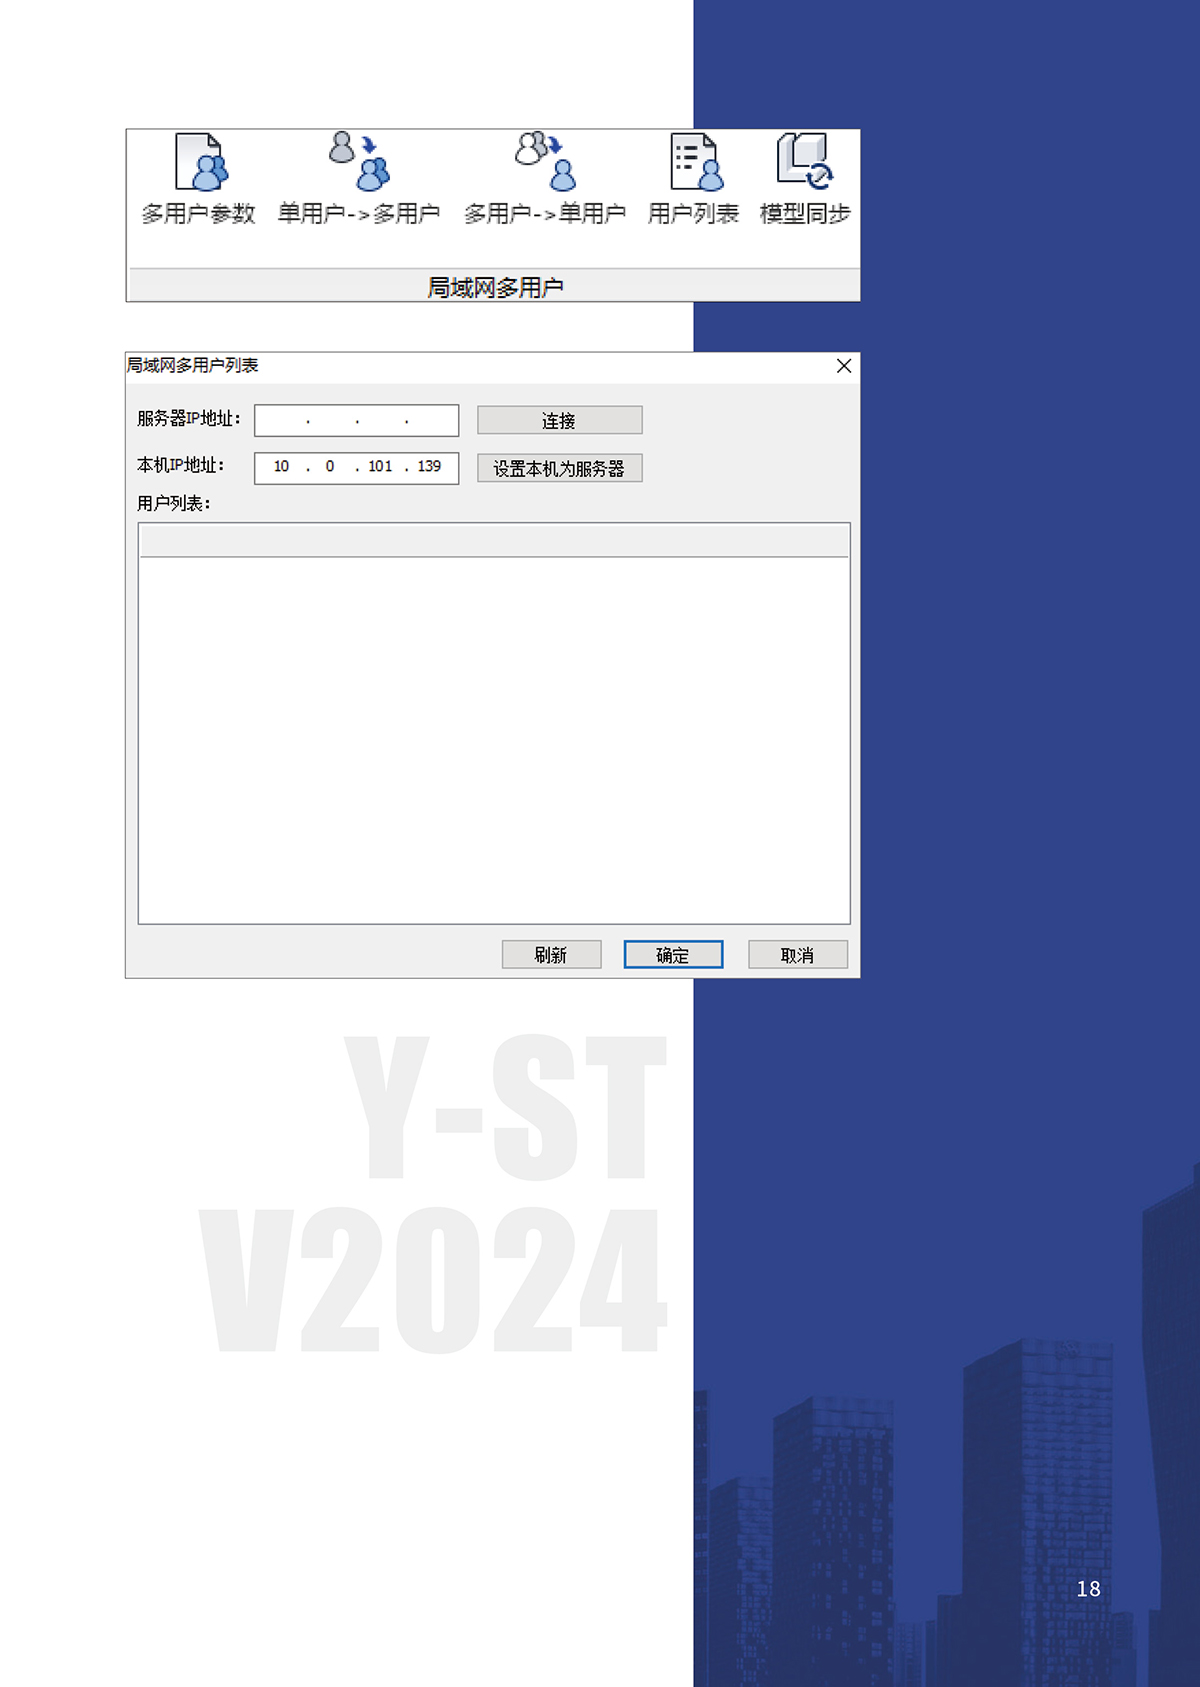 钢结构深化设计软件Y-ST-10_02.jpg